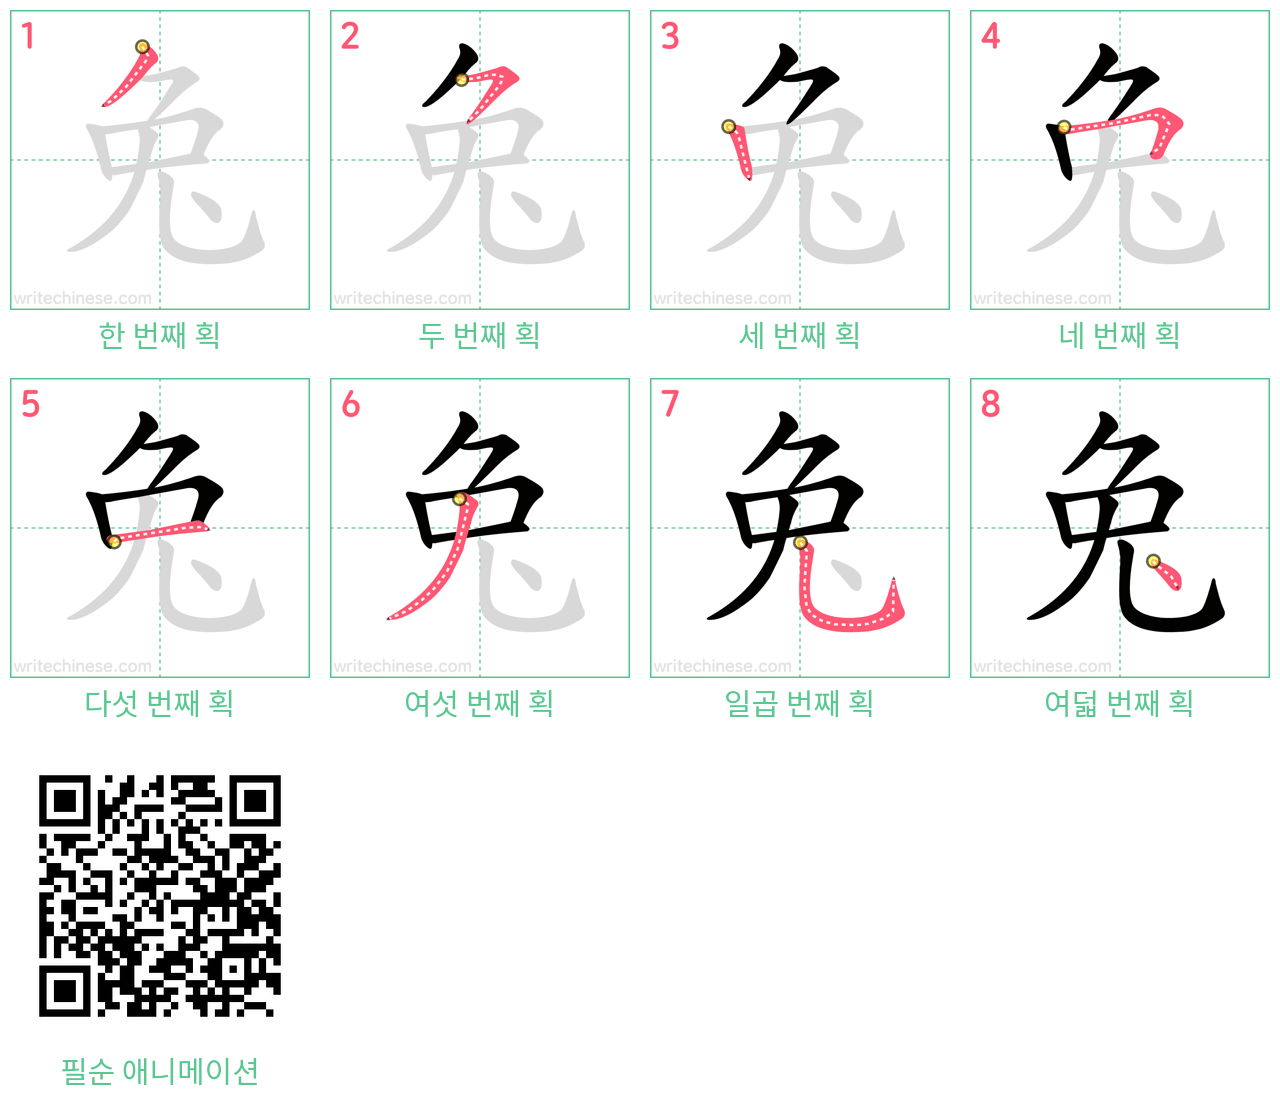 兔 step-by-step stroke order diagrams